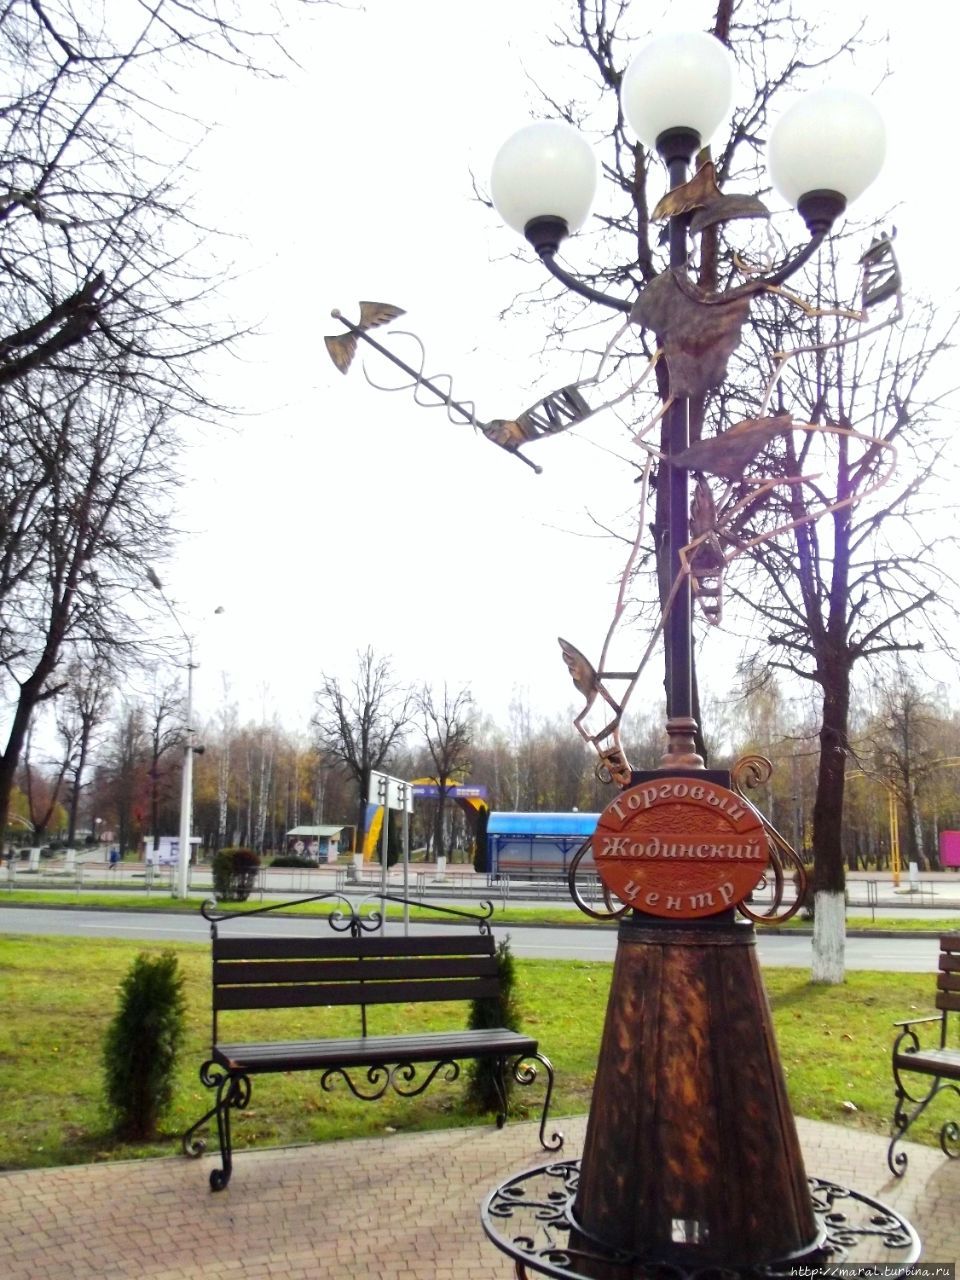 На фонарь заскочил на крылатых сандалях Бог торговли Гермес Жодино, Беларусь